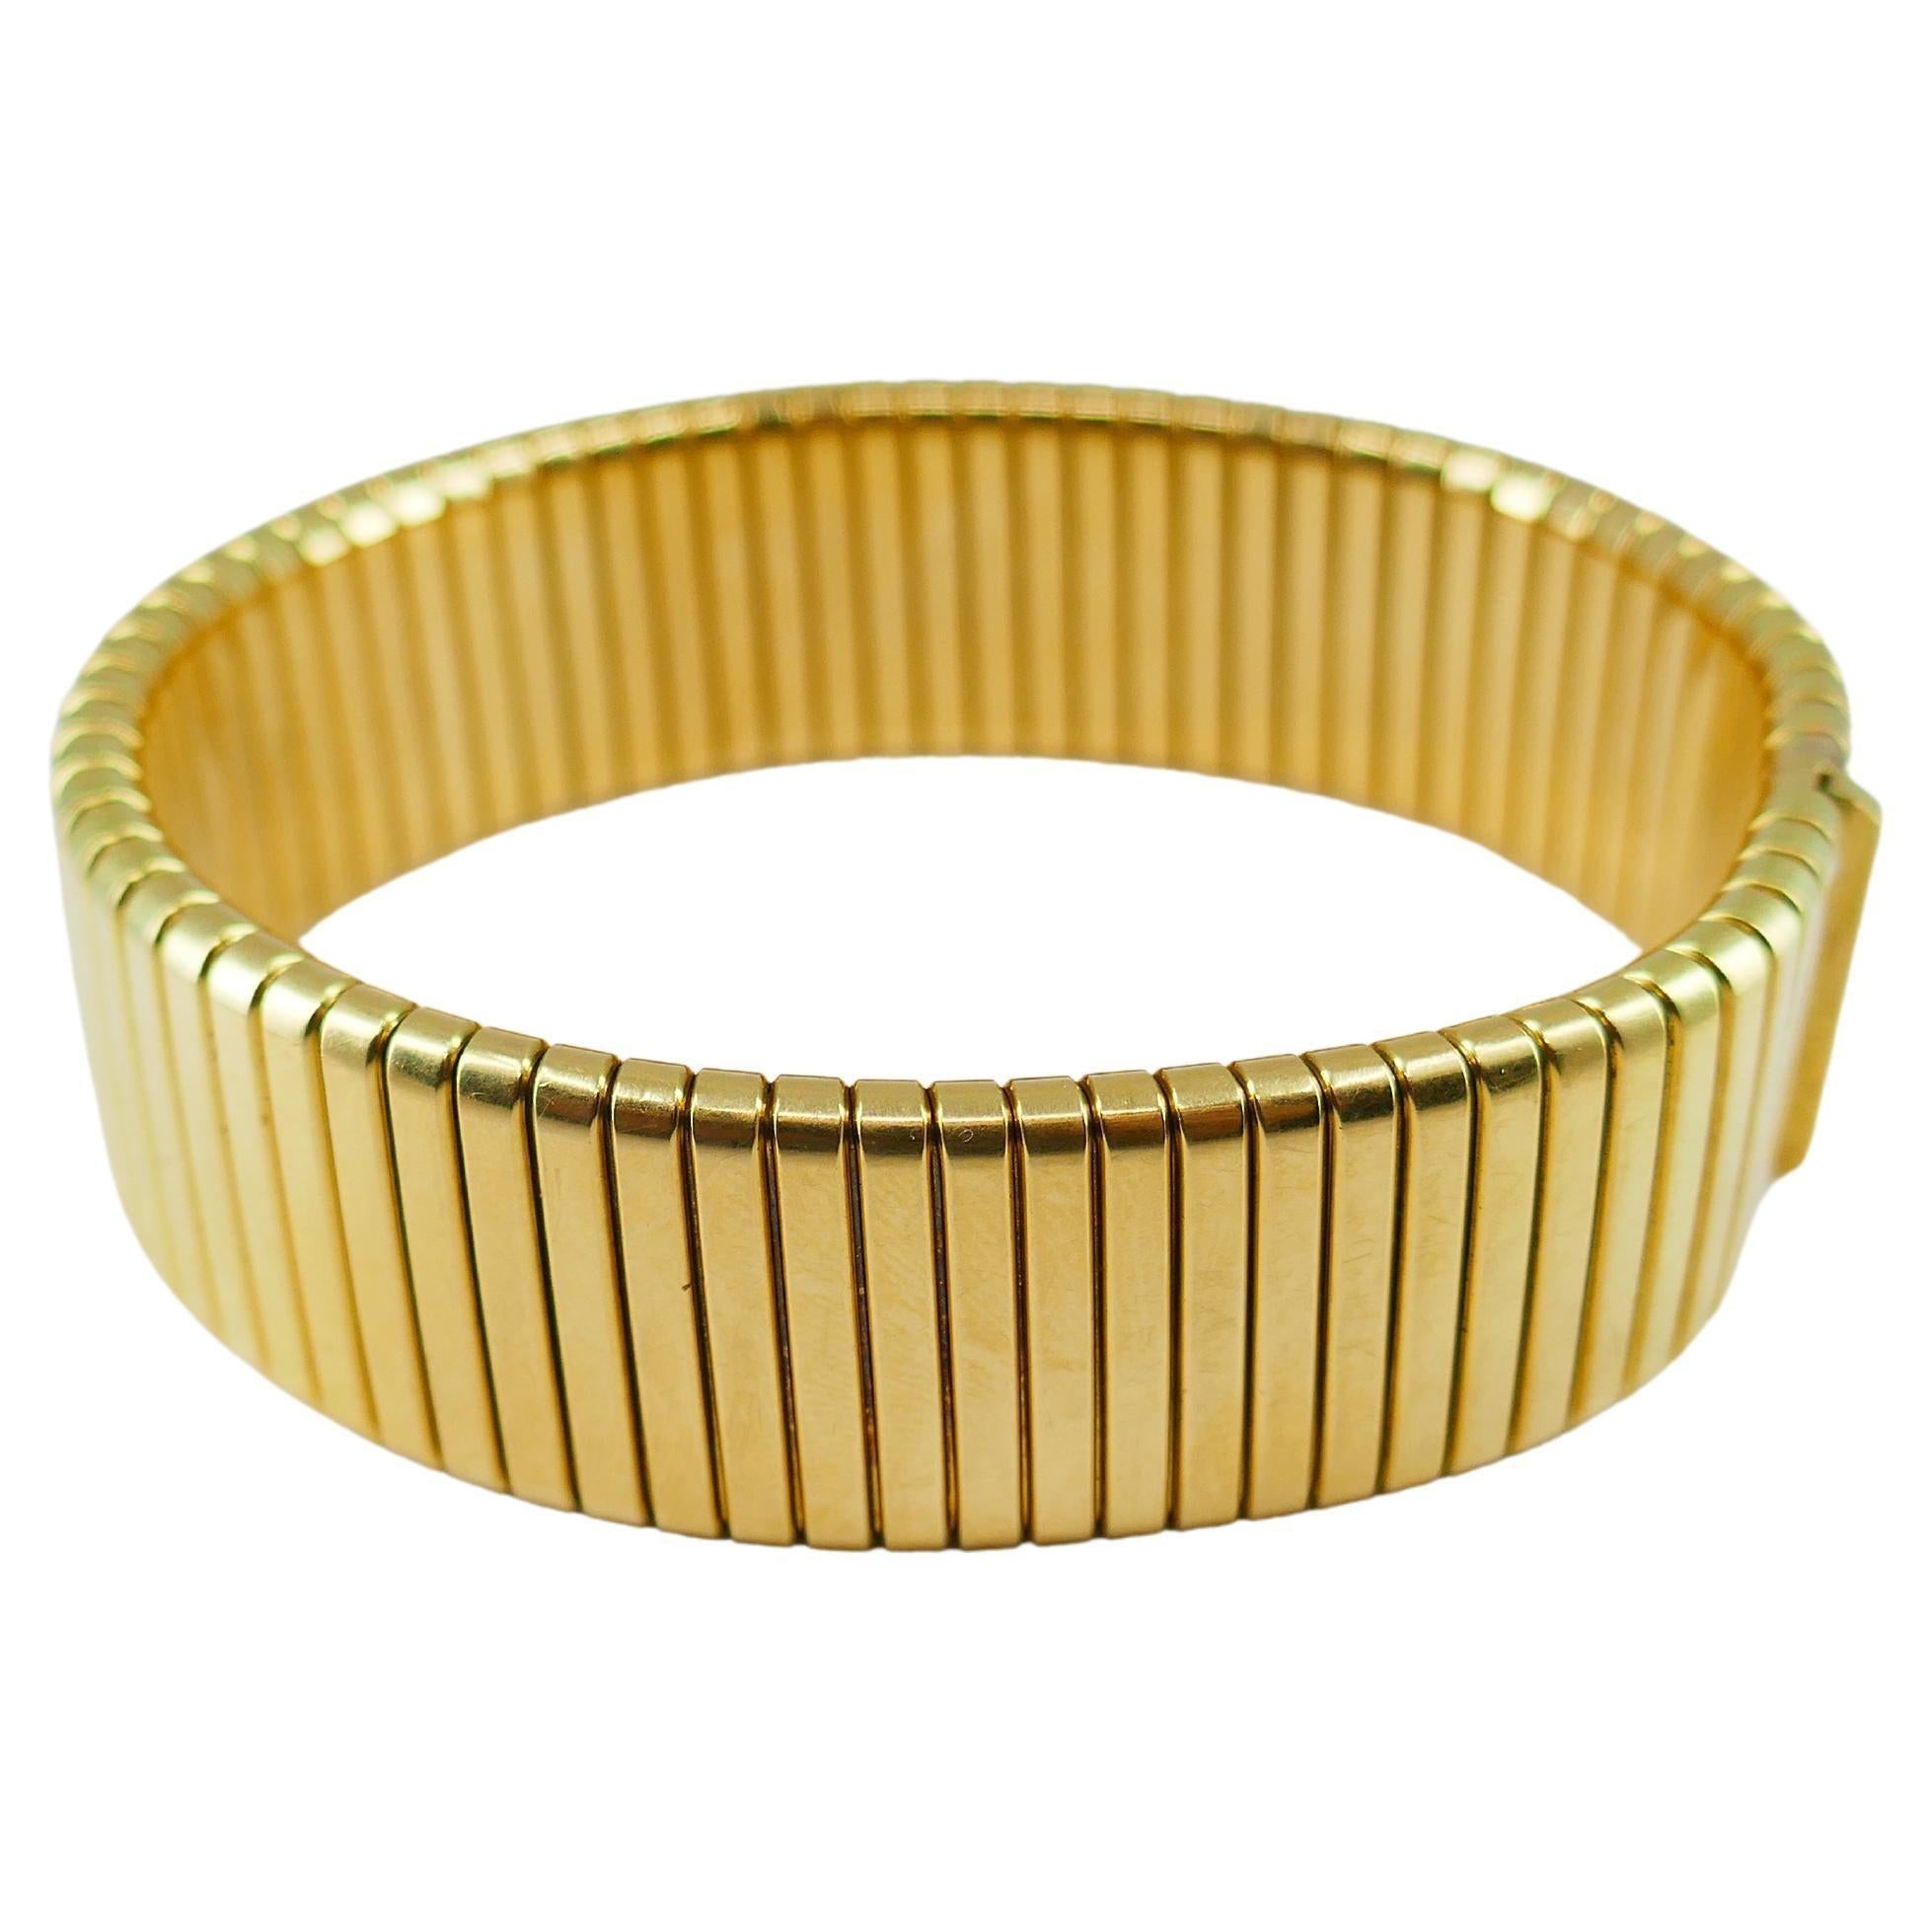 Eine große Vintage Tubogas Armband aus 18k Gold.
Das Armband ist elegant und klassisch. Er hat eine rechteckige Form mit leicht abgerundeten Kanten. Die Geometrie des Armbands ist perfekt; die Breite der vertikalen Linien passt gut zur Gesamtbreite